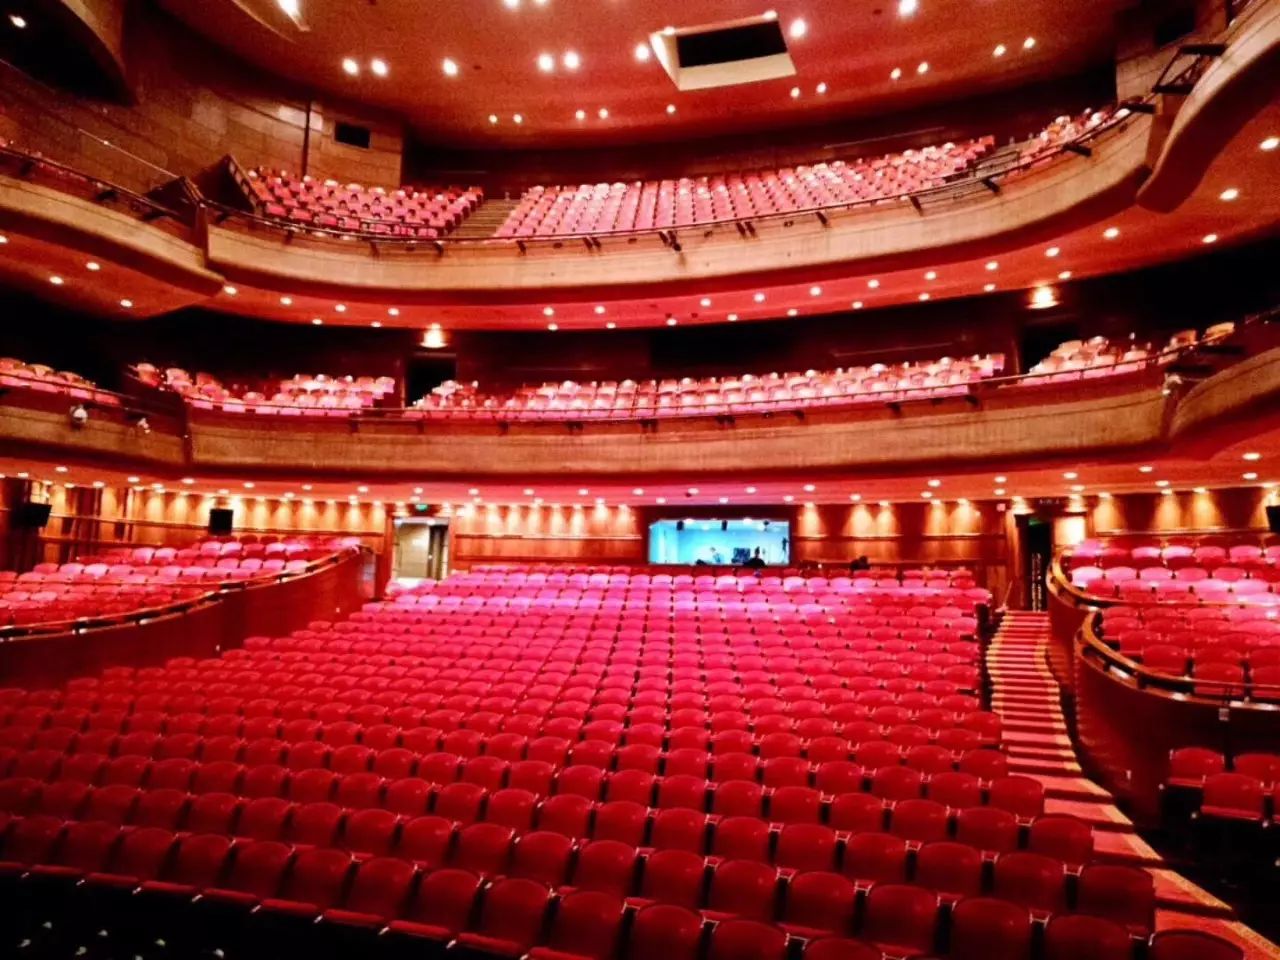 宁波大剧院位于姚江湾头三江文化长廊顶端,临江面建,三面环水是一座